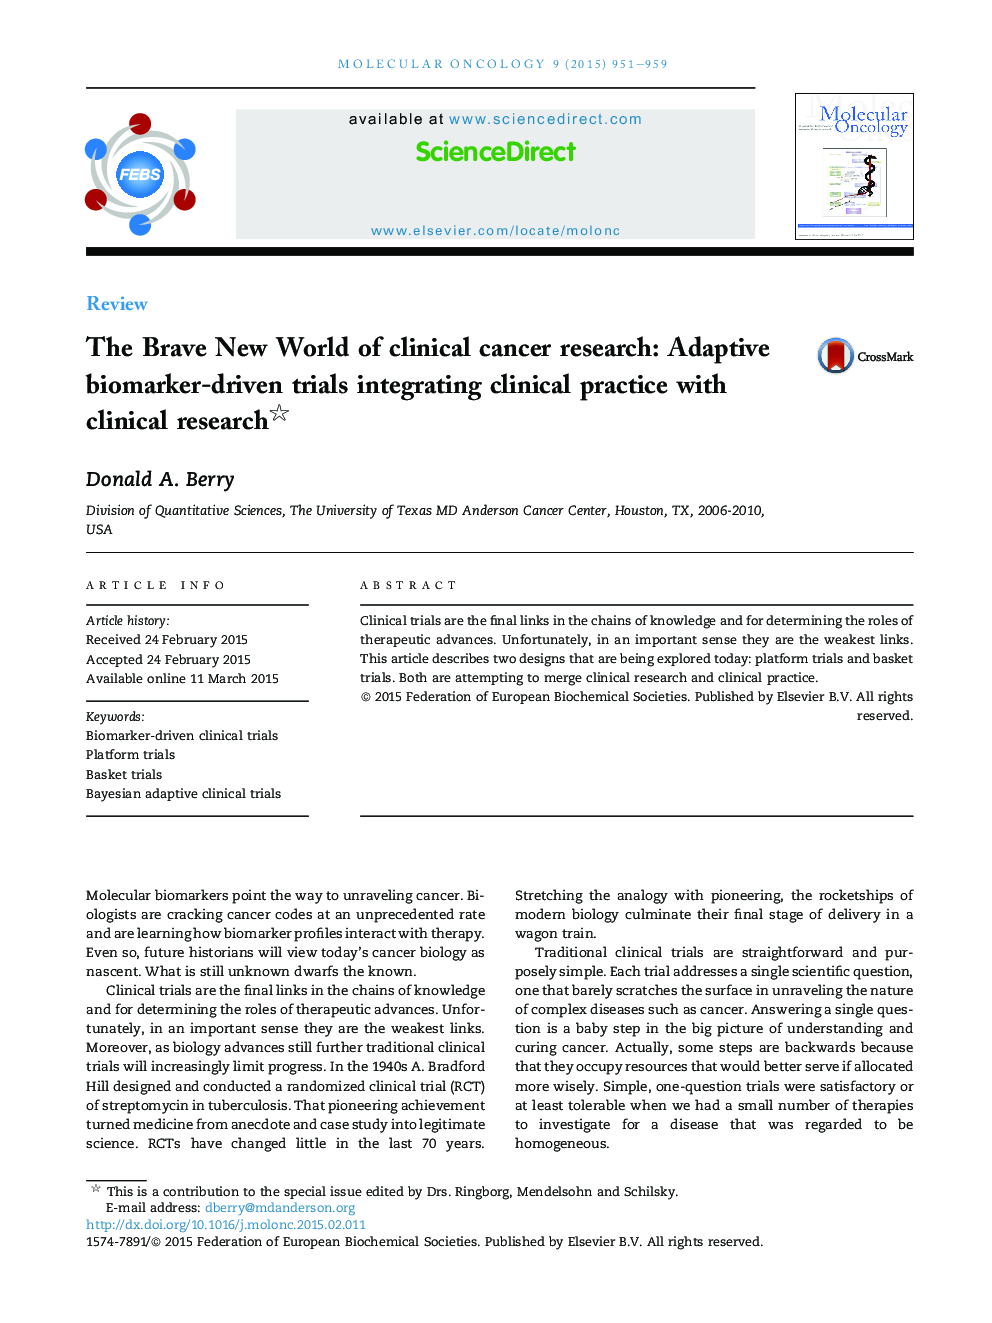 دنیای شکننده جدید تحقیقات سرطان بالینی: آزمایشهای متداول بیومارکر با استفاده از روش بالینی با تحقیقات بالینی 